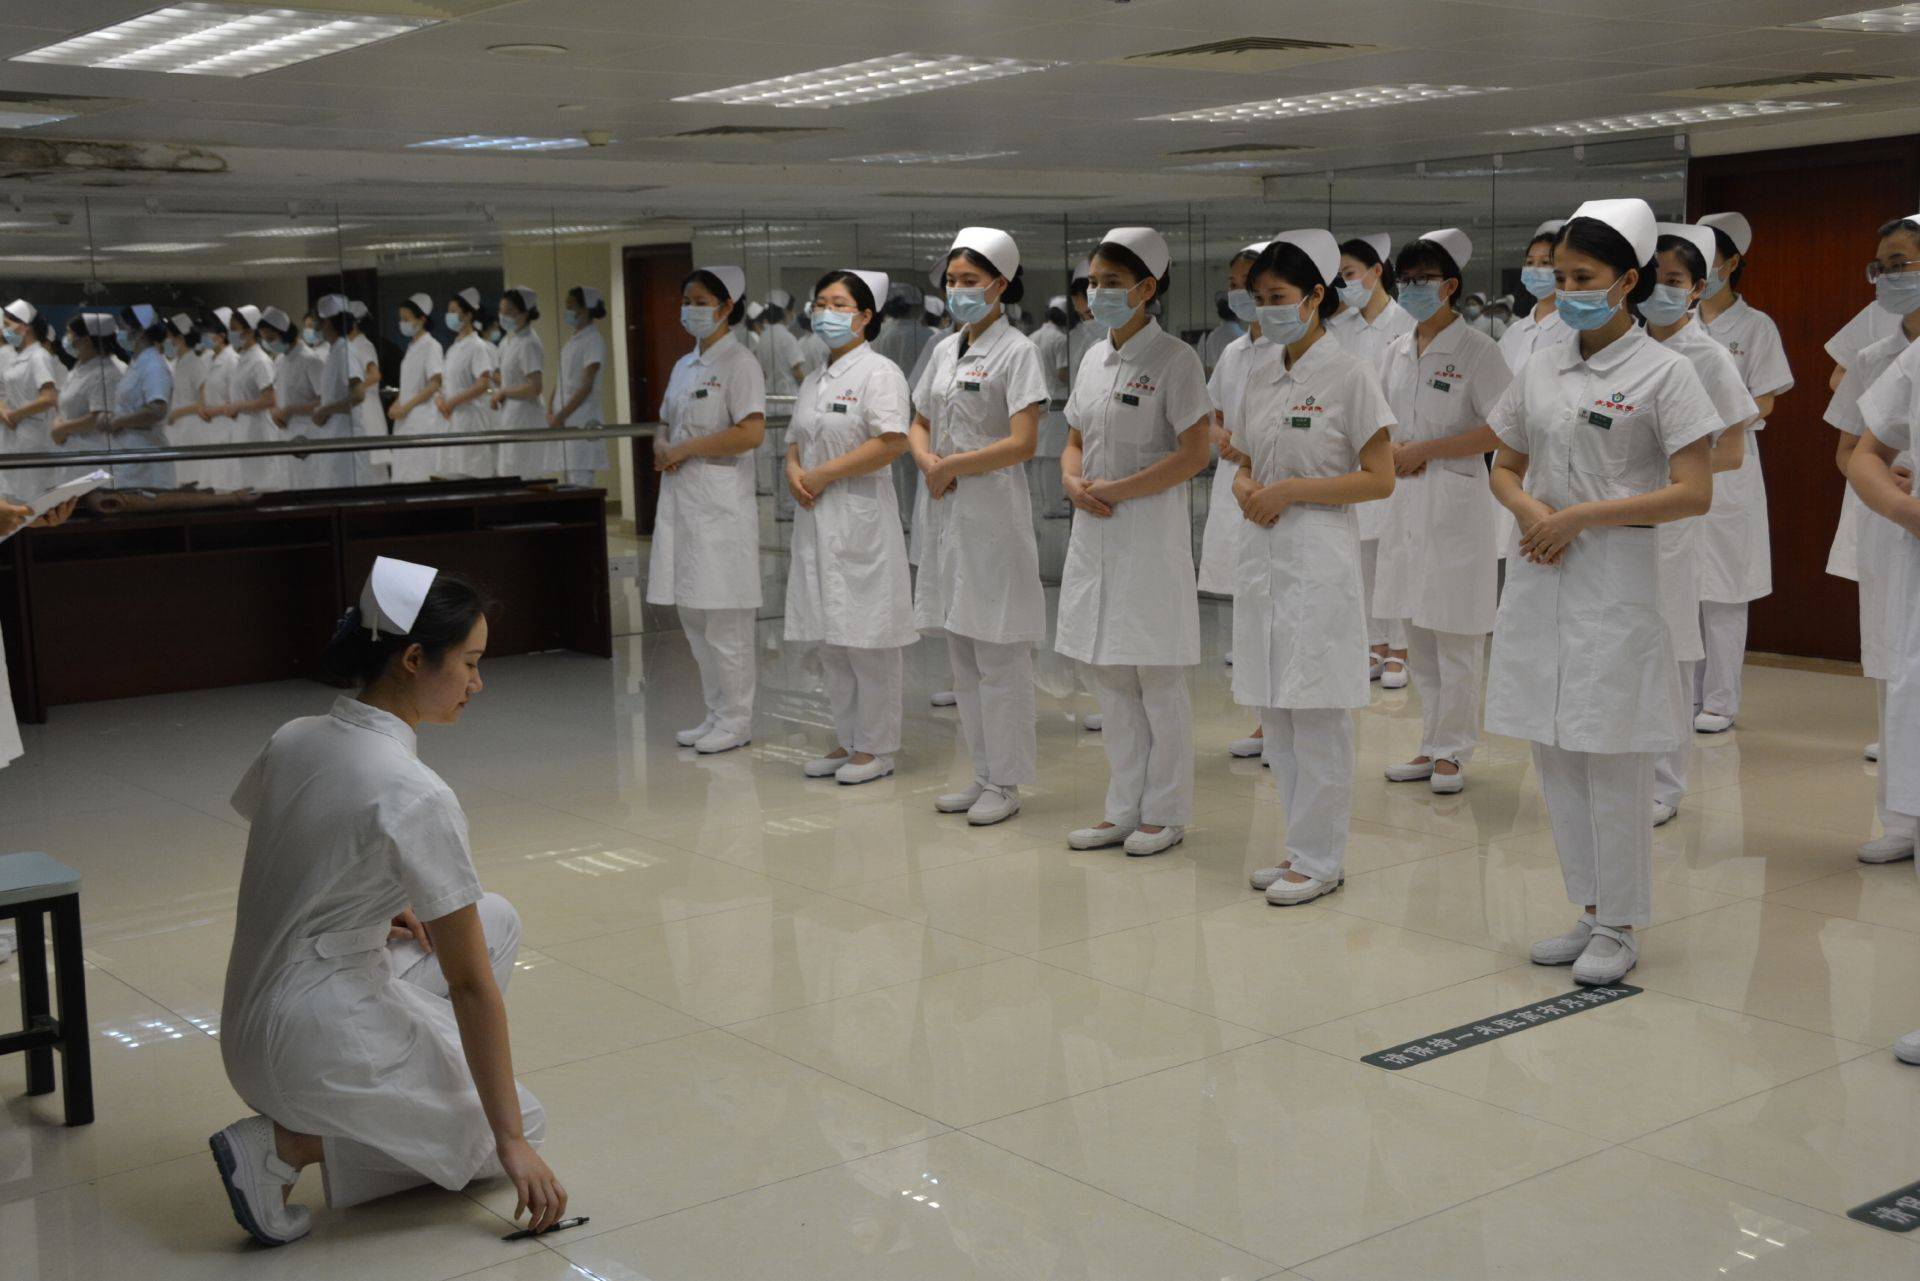 武警广东省总队医院集中开展护理礼仪培训,树立护理人员良好形象